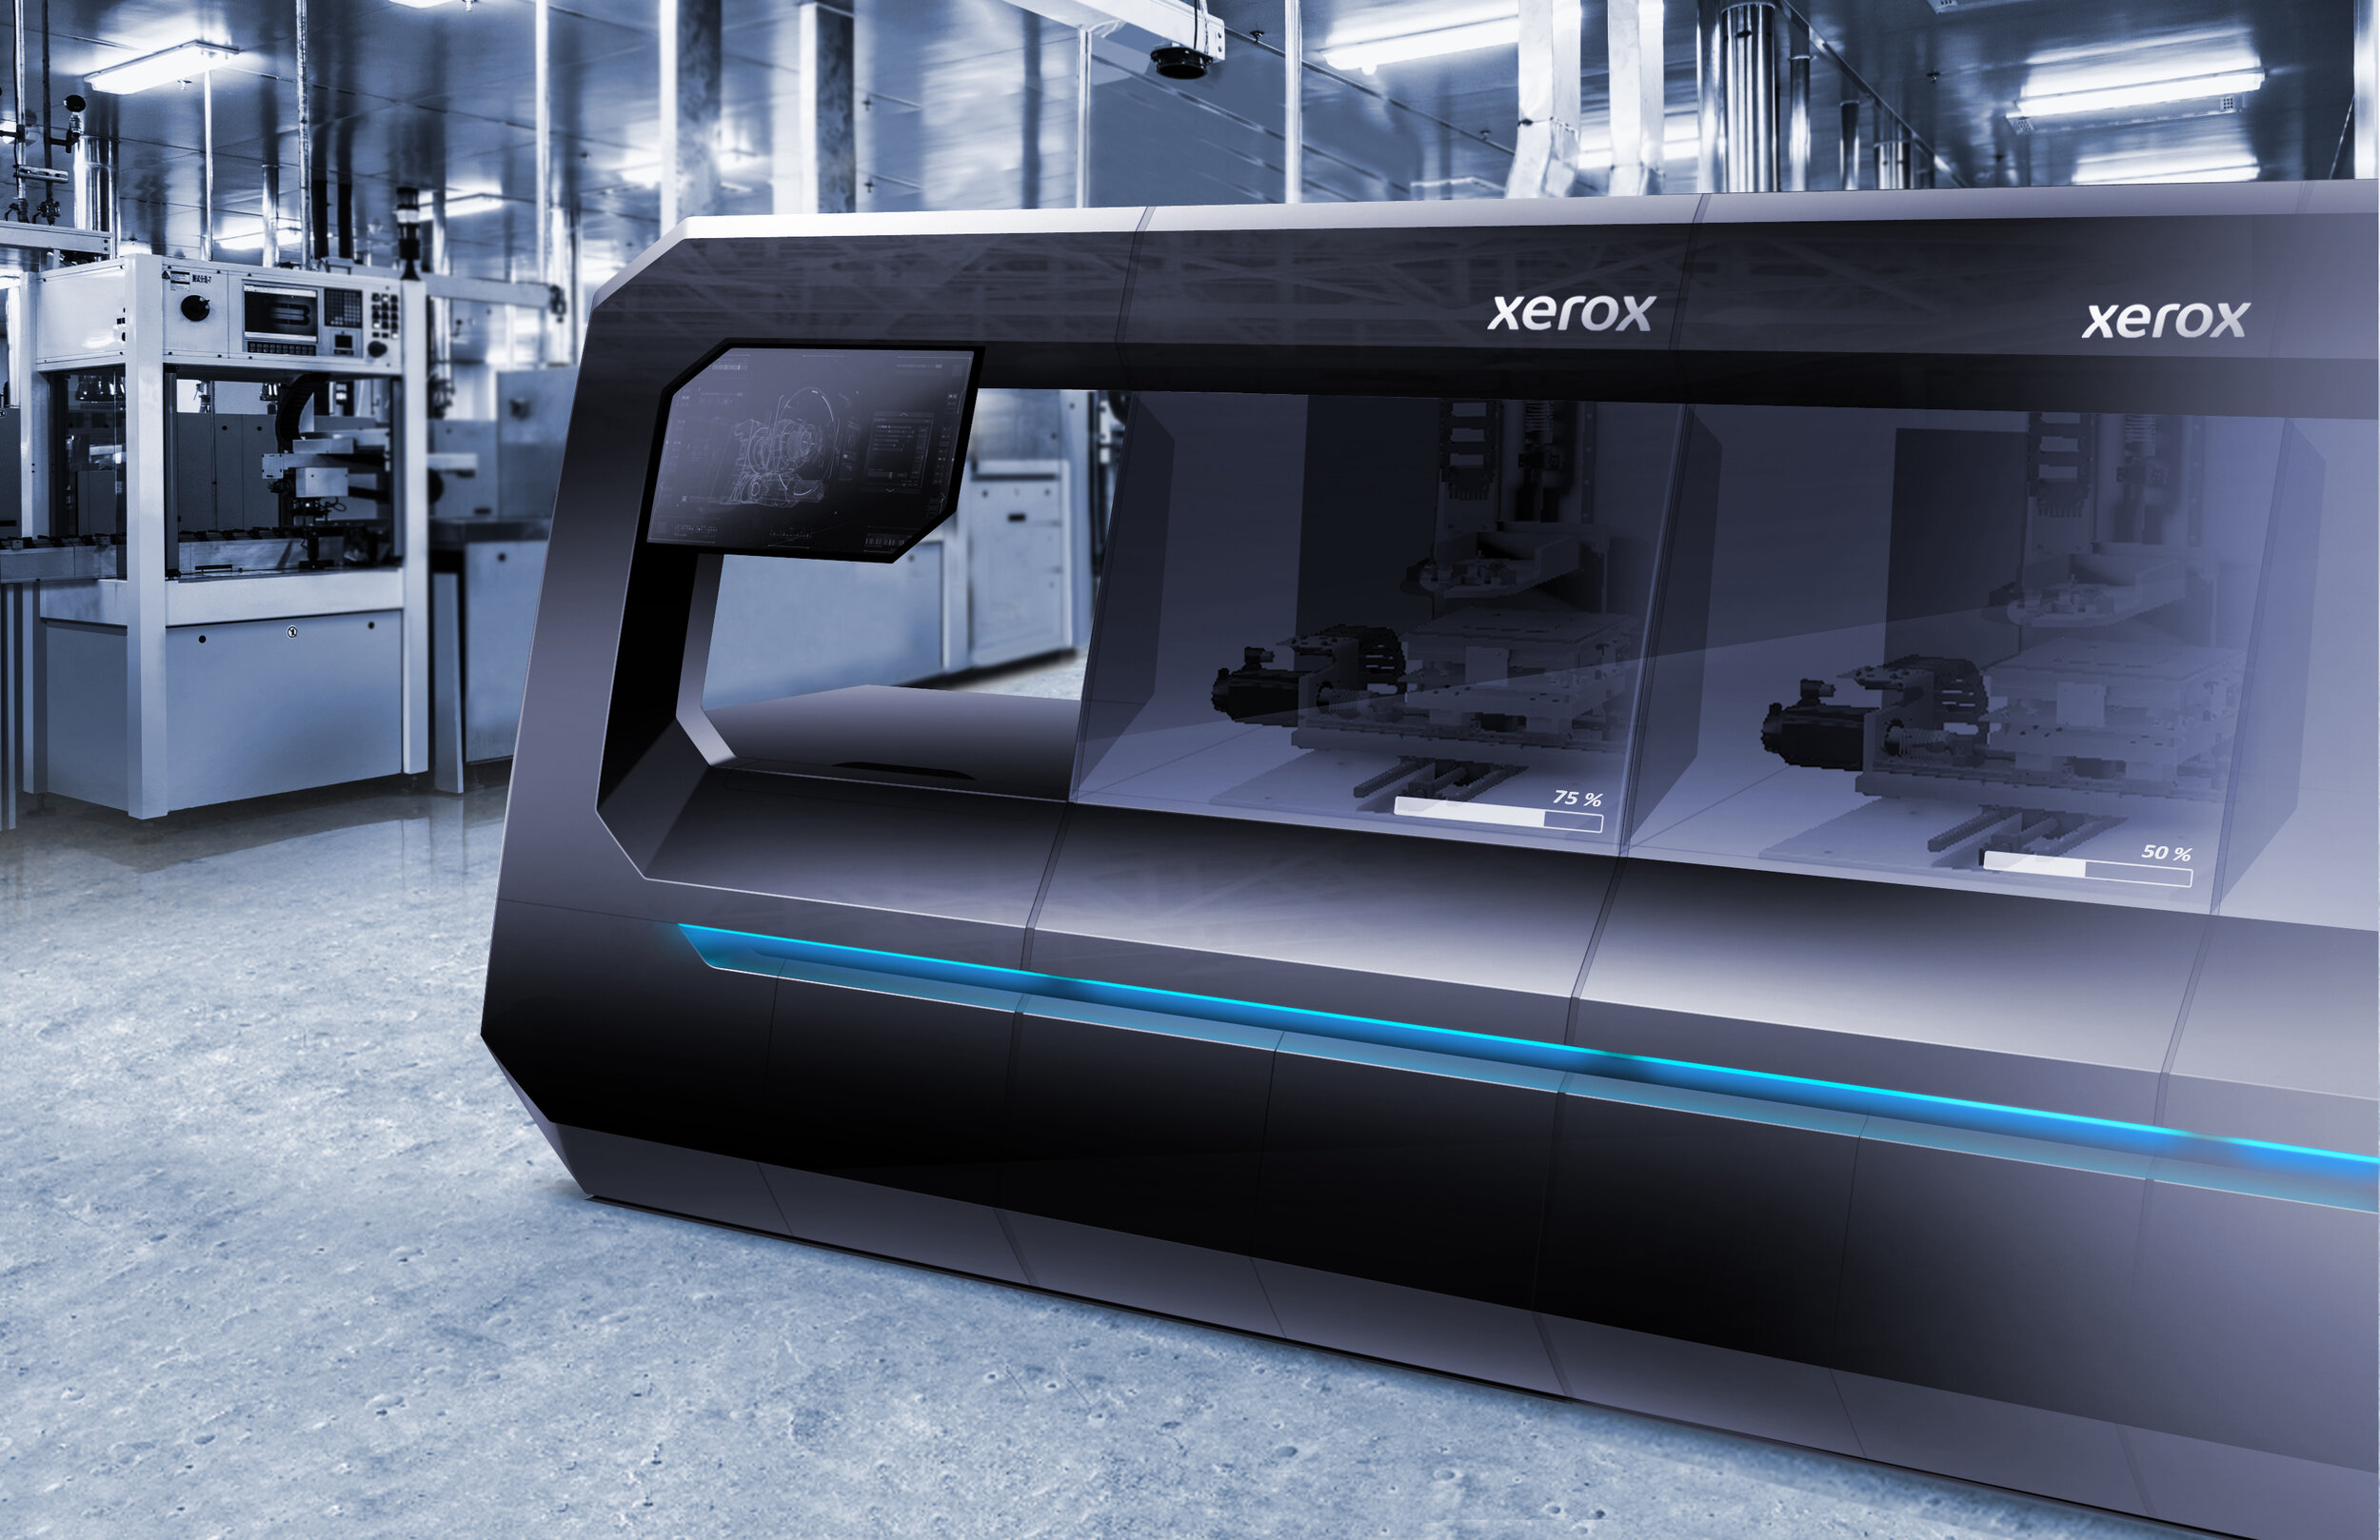 Xerox-3Dprinter-render2.jpg